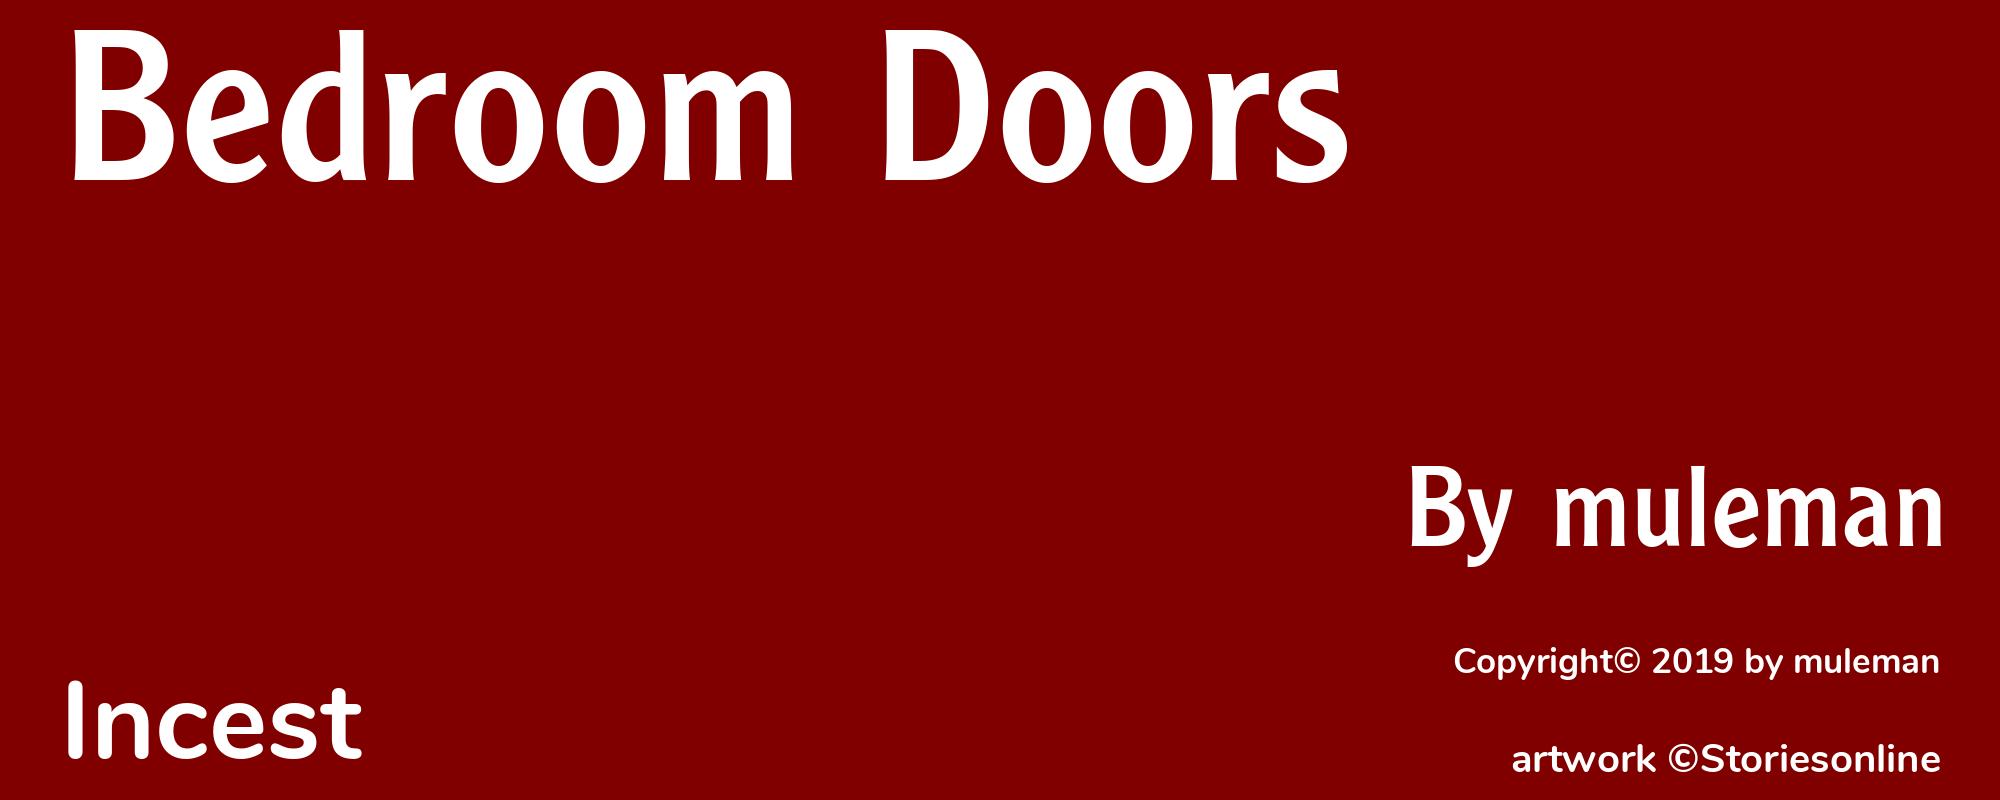 Bedroom Doors - Cover